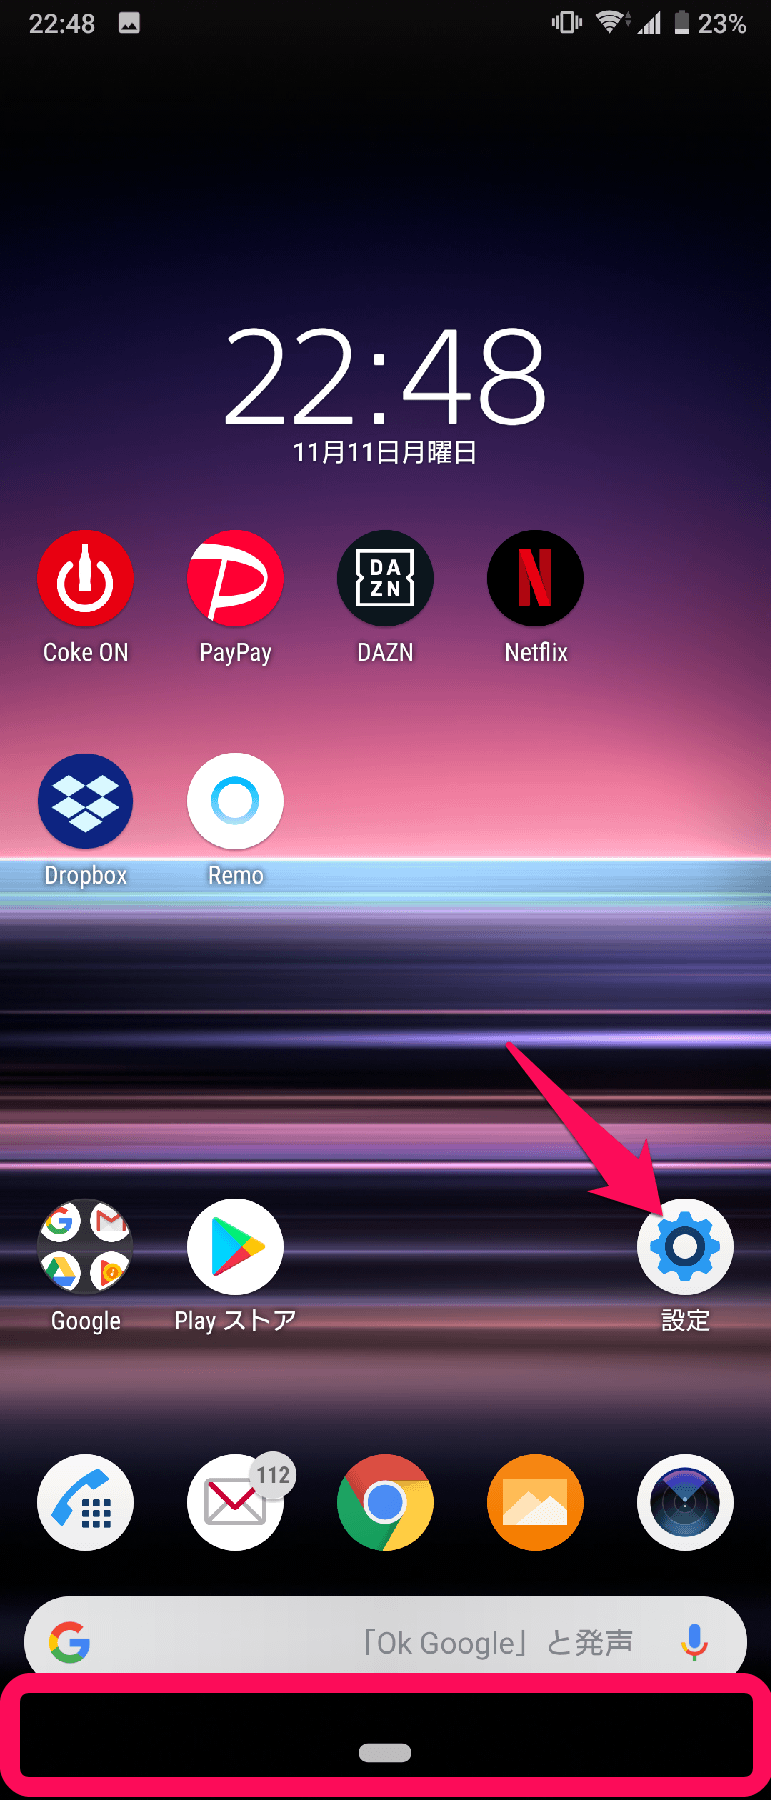 【Android 9】タスクボタン(■)を表示させる方法 - 最近使ったアプリボタン復活1